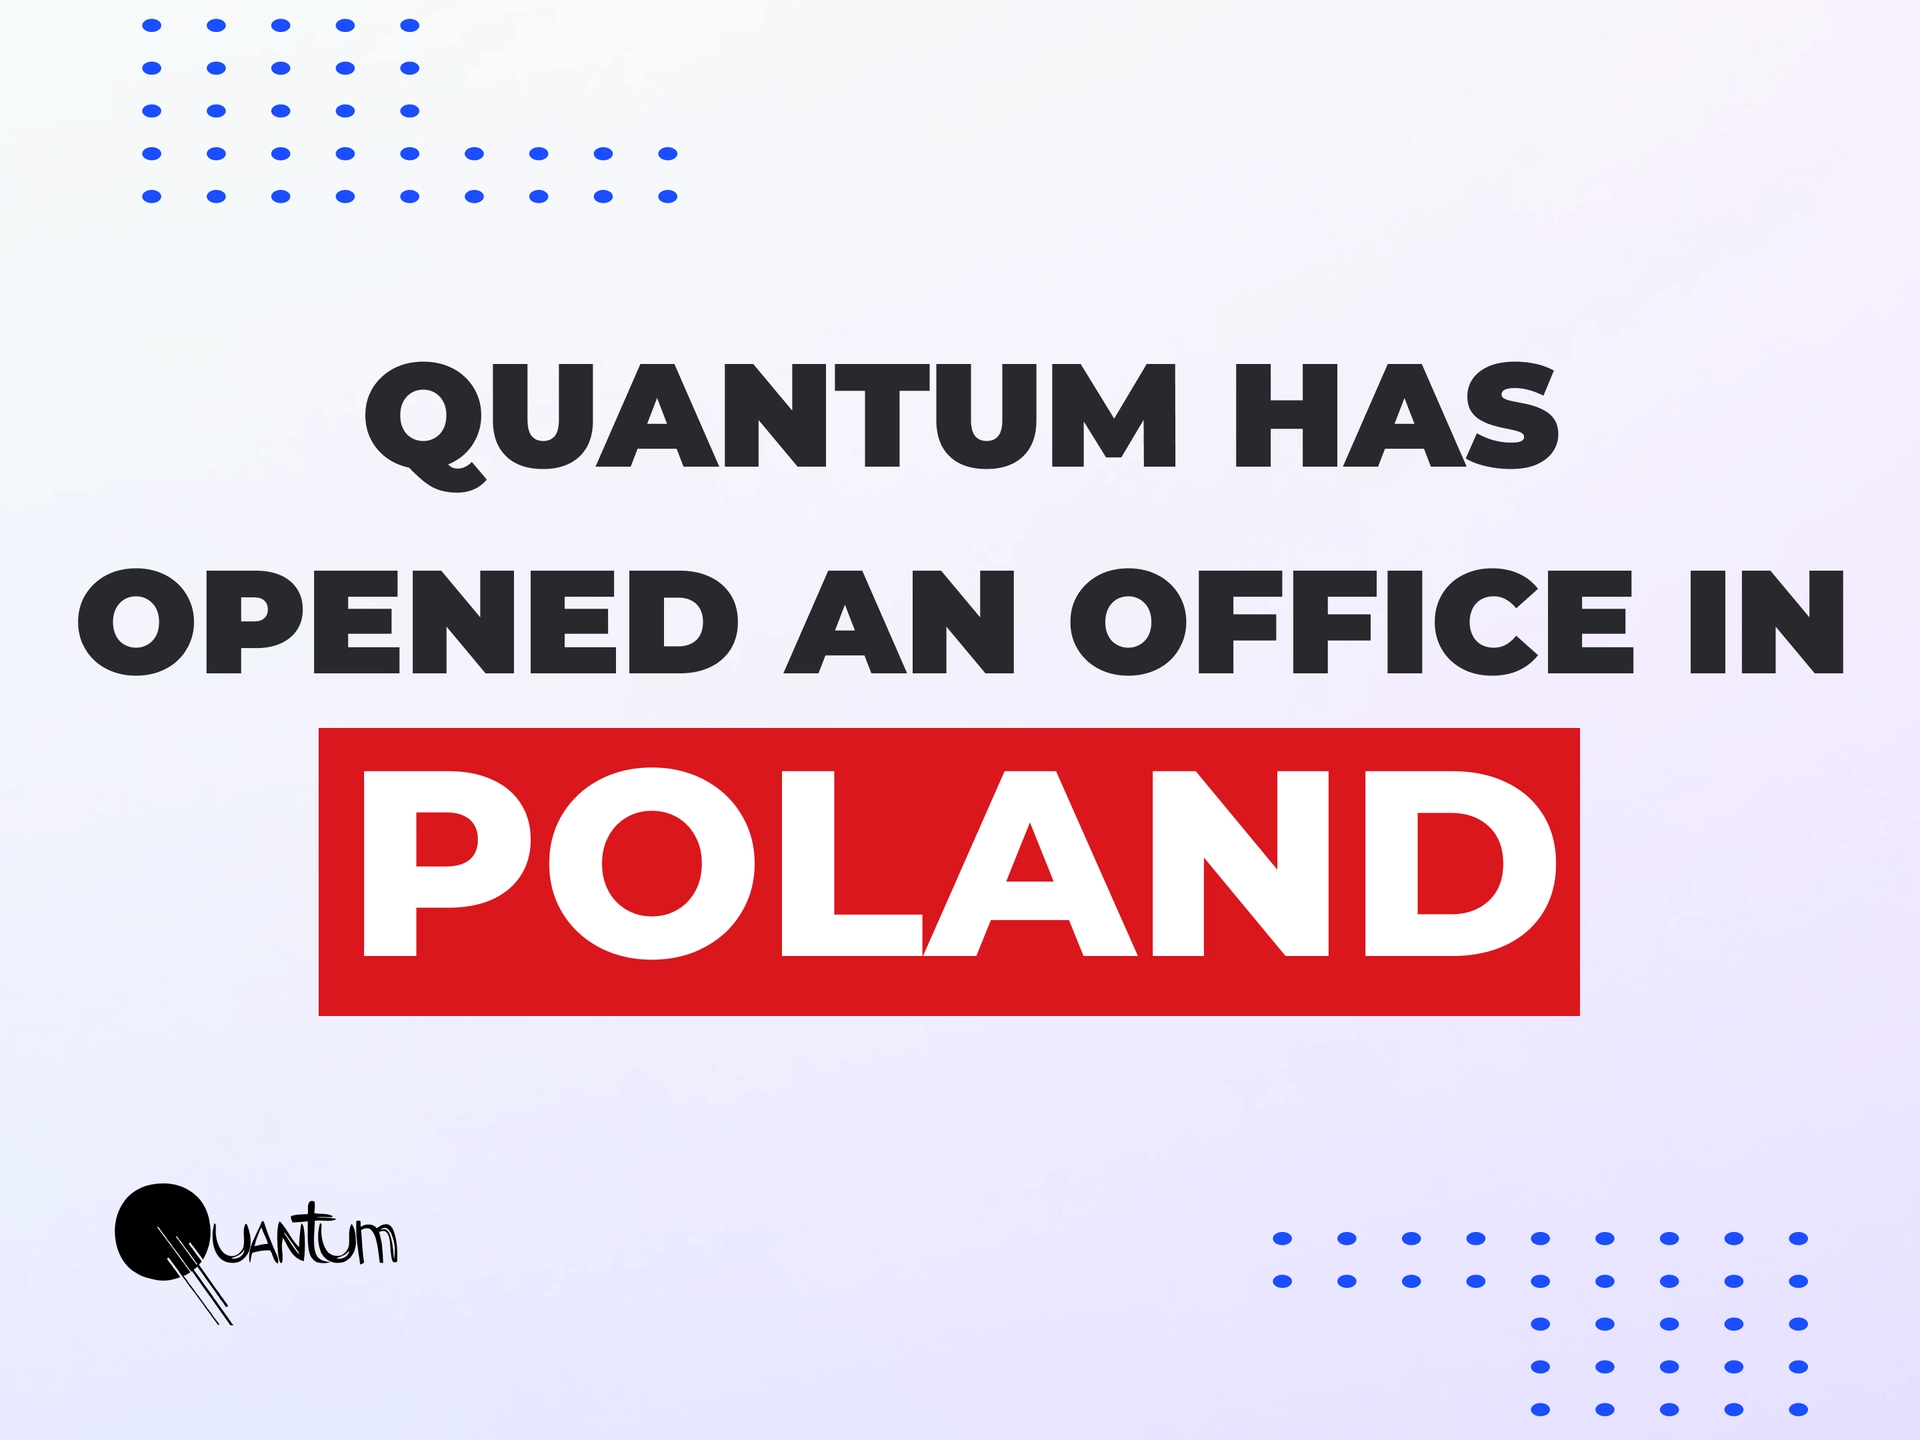 Poland office